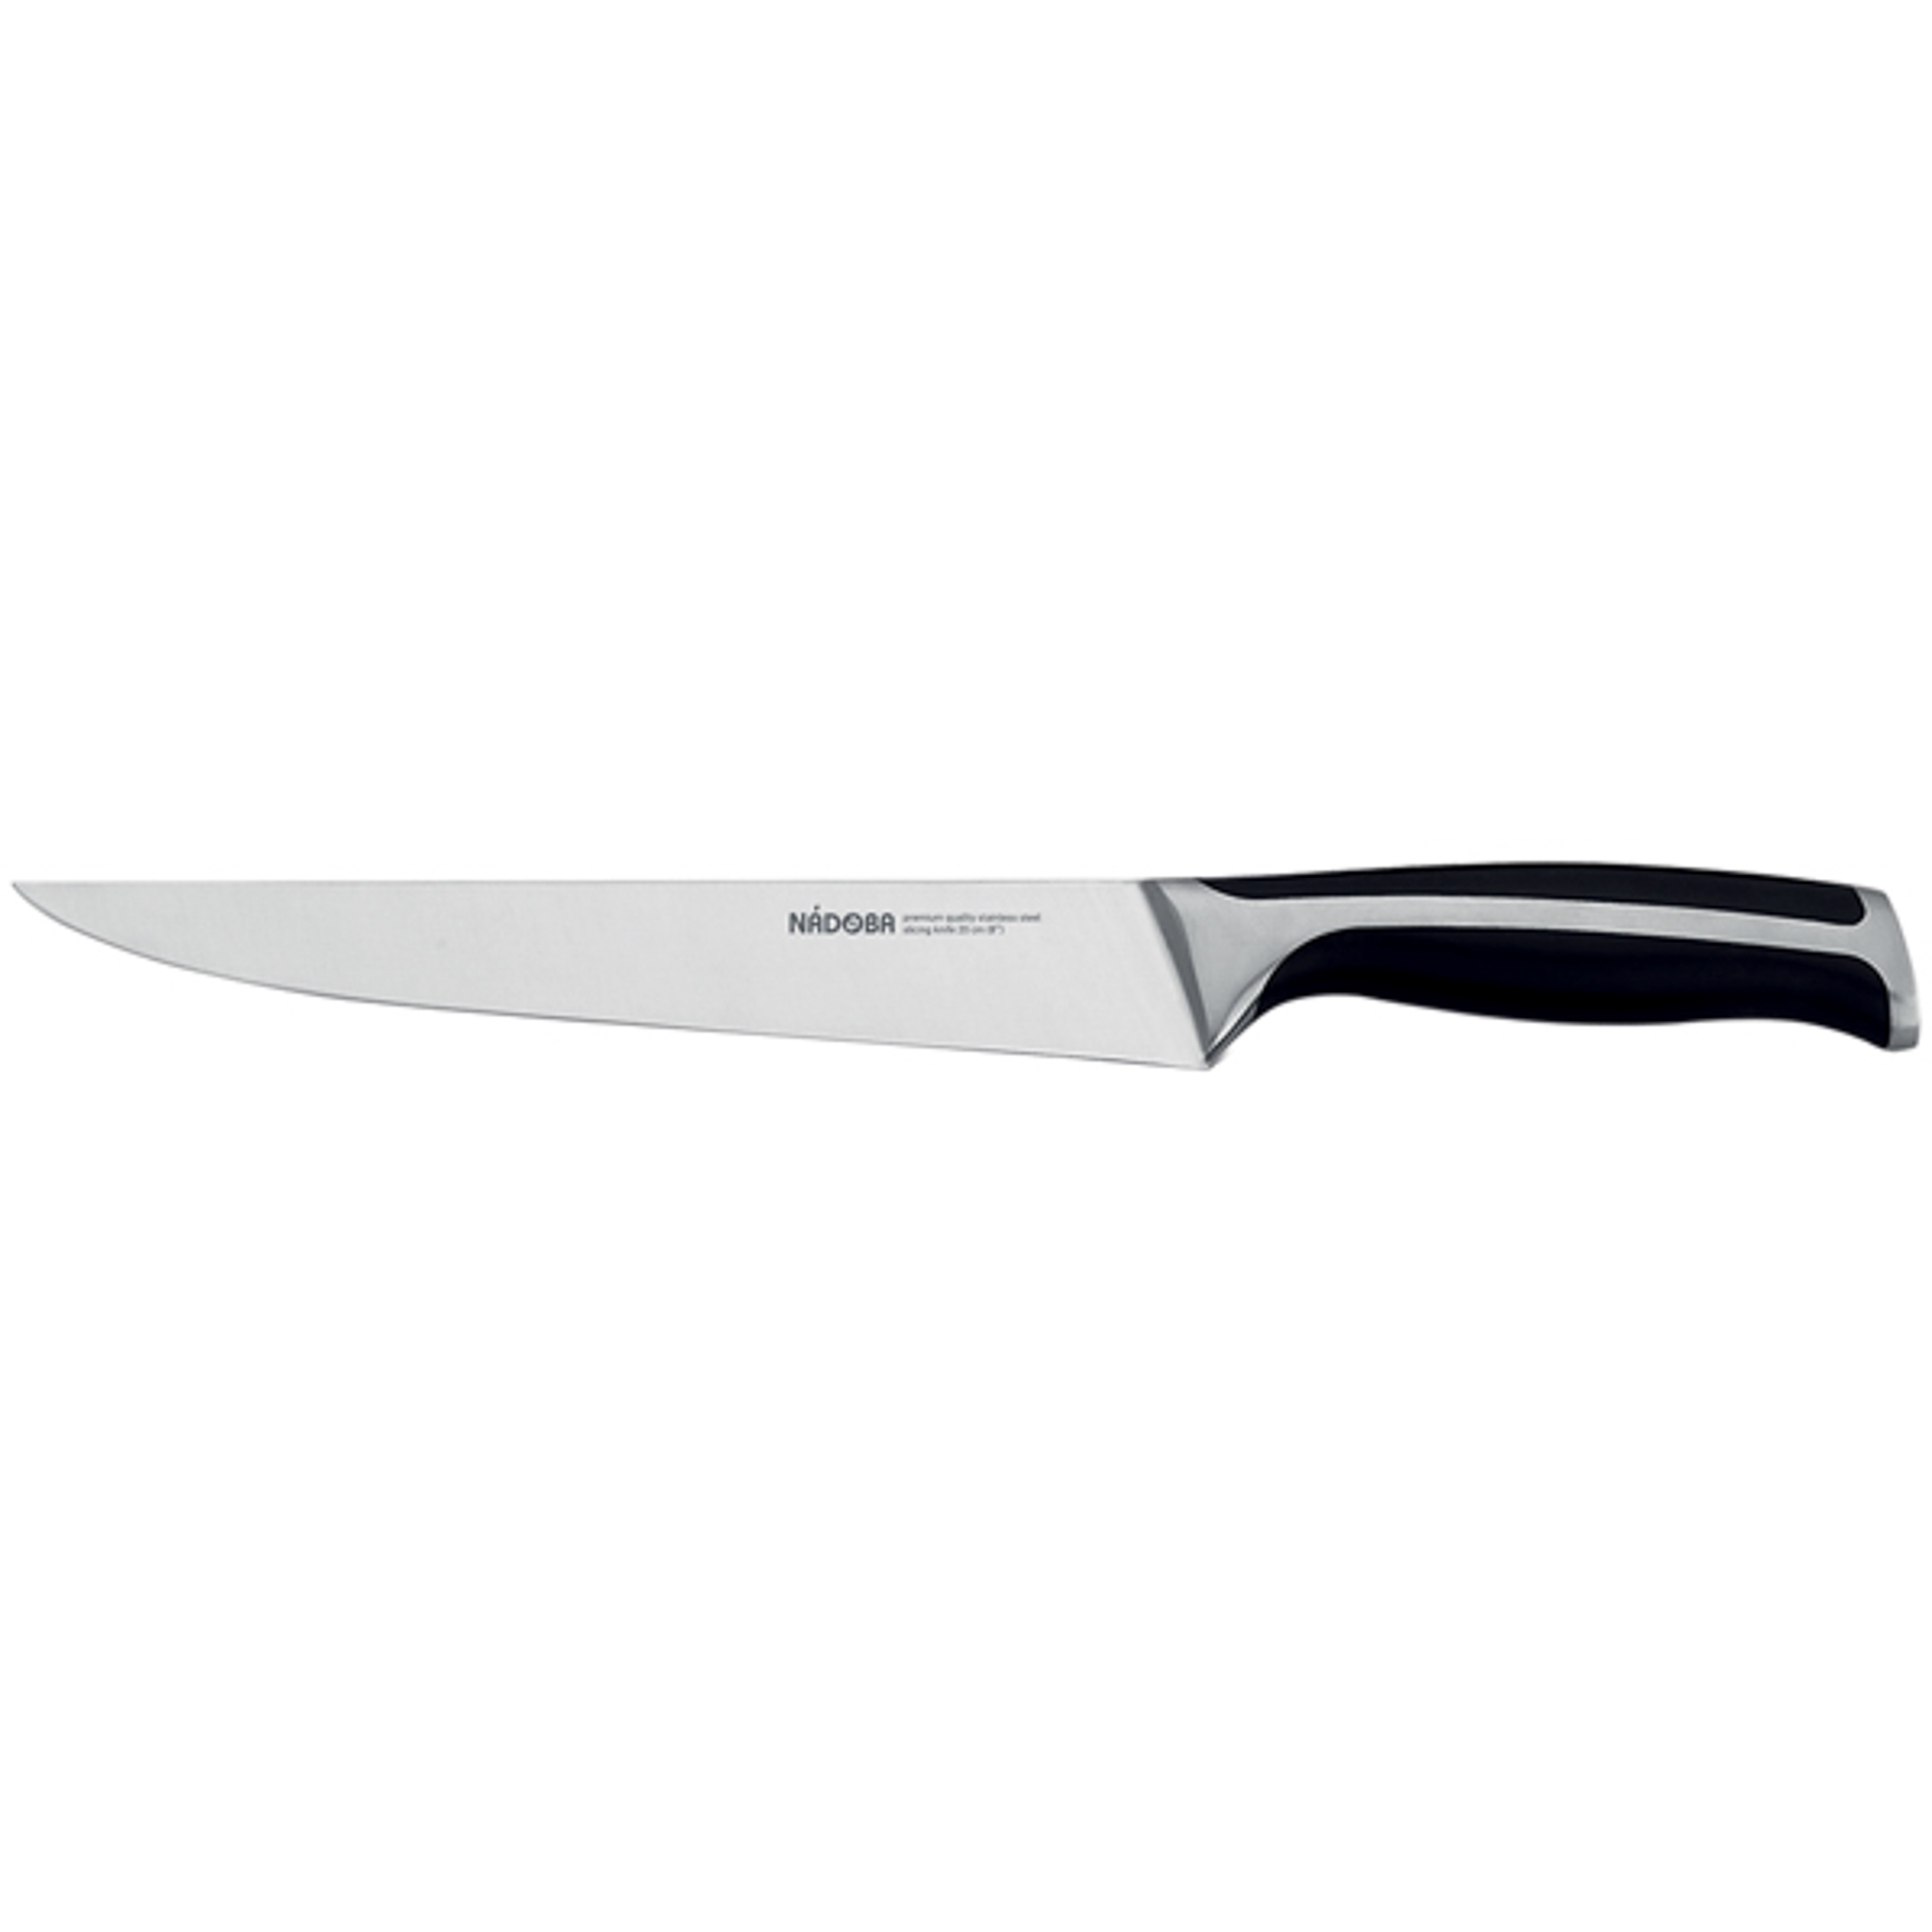 Нож разделочный 20 см Nadoba ursa нож универсальный 14 см nadoba ursa